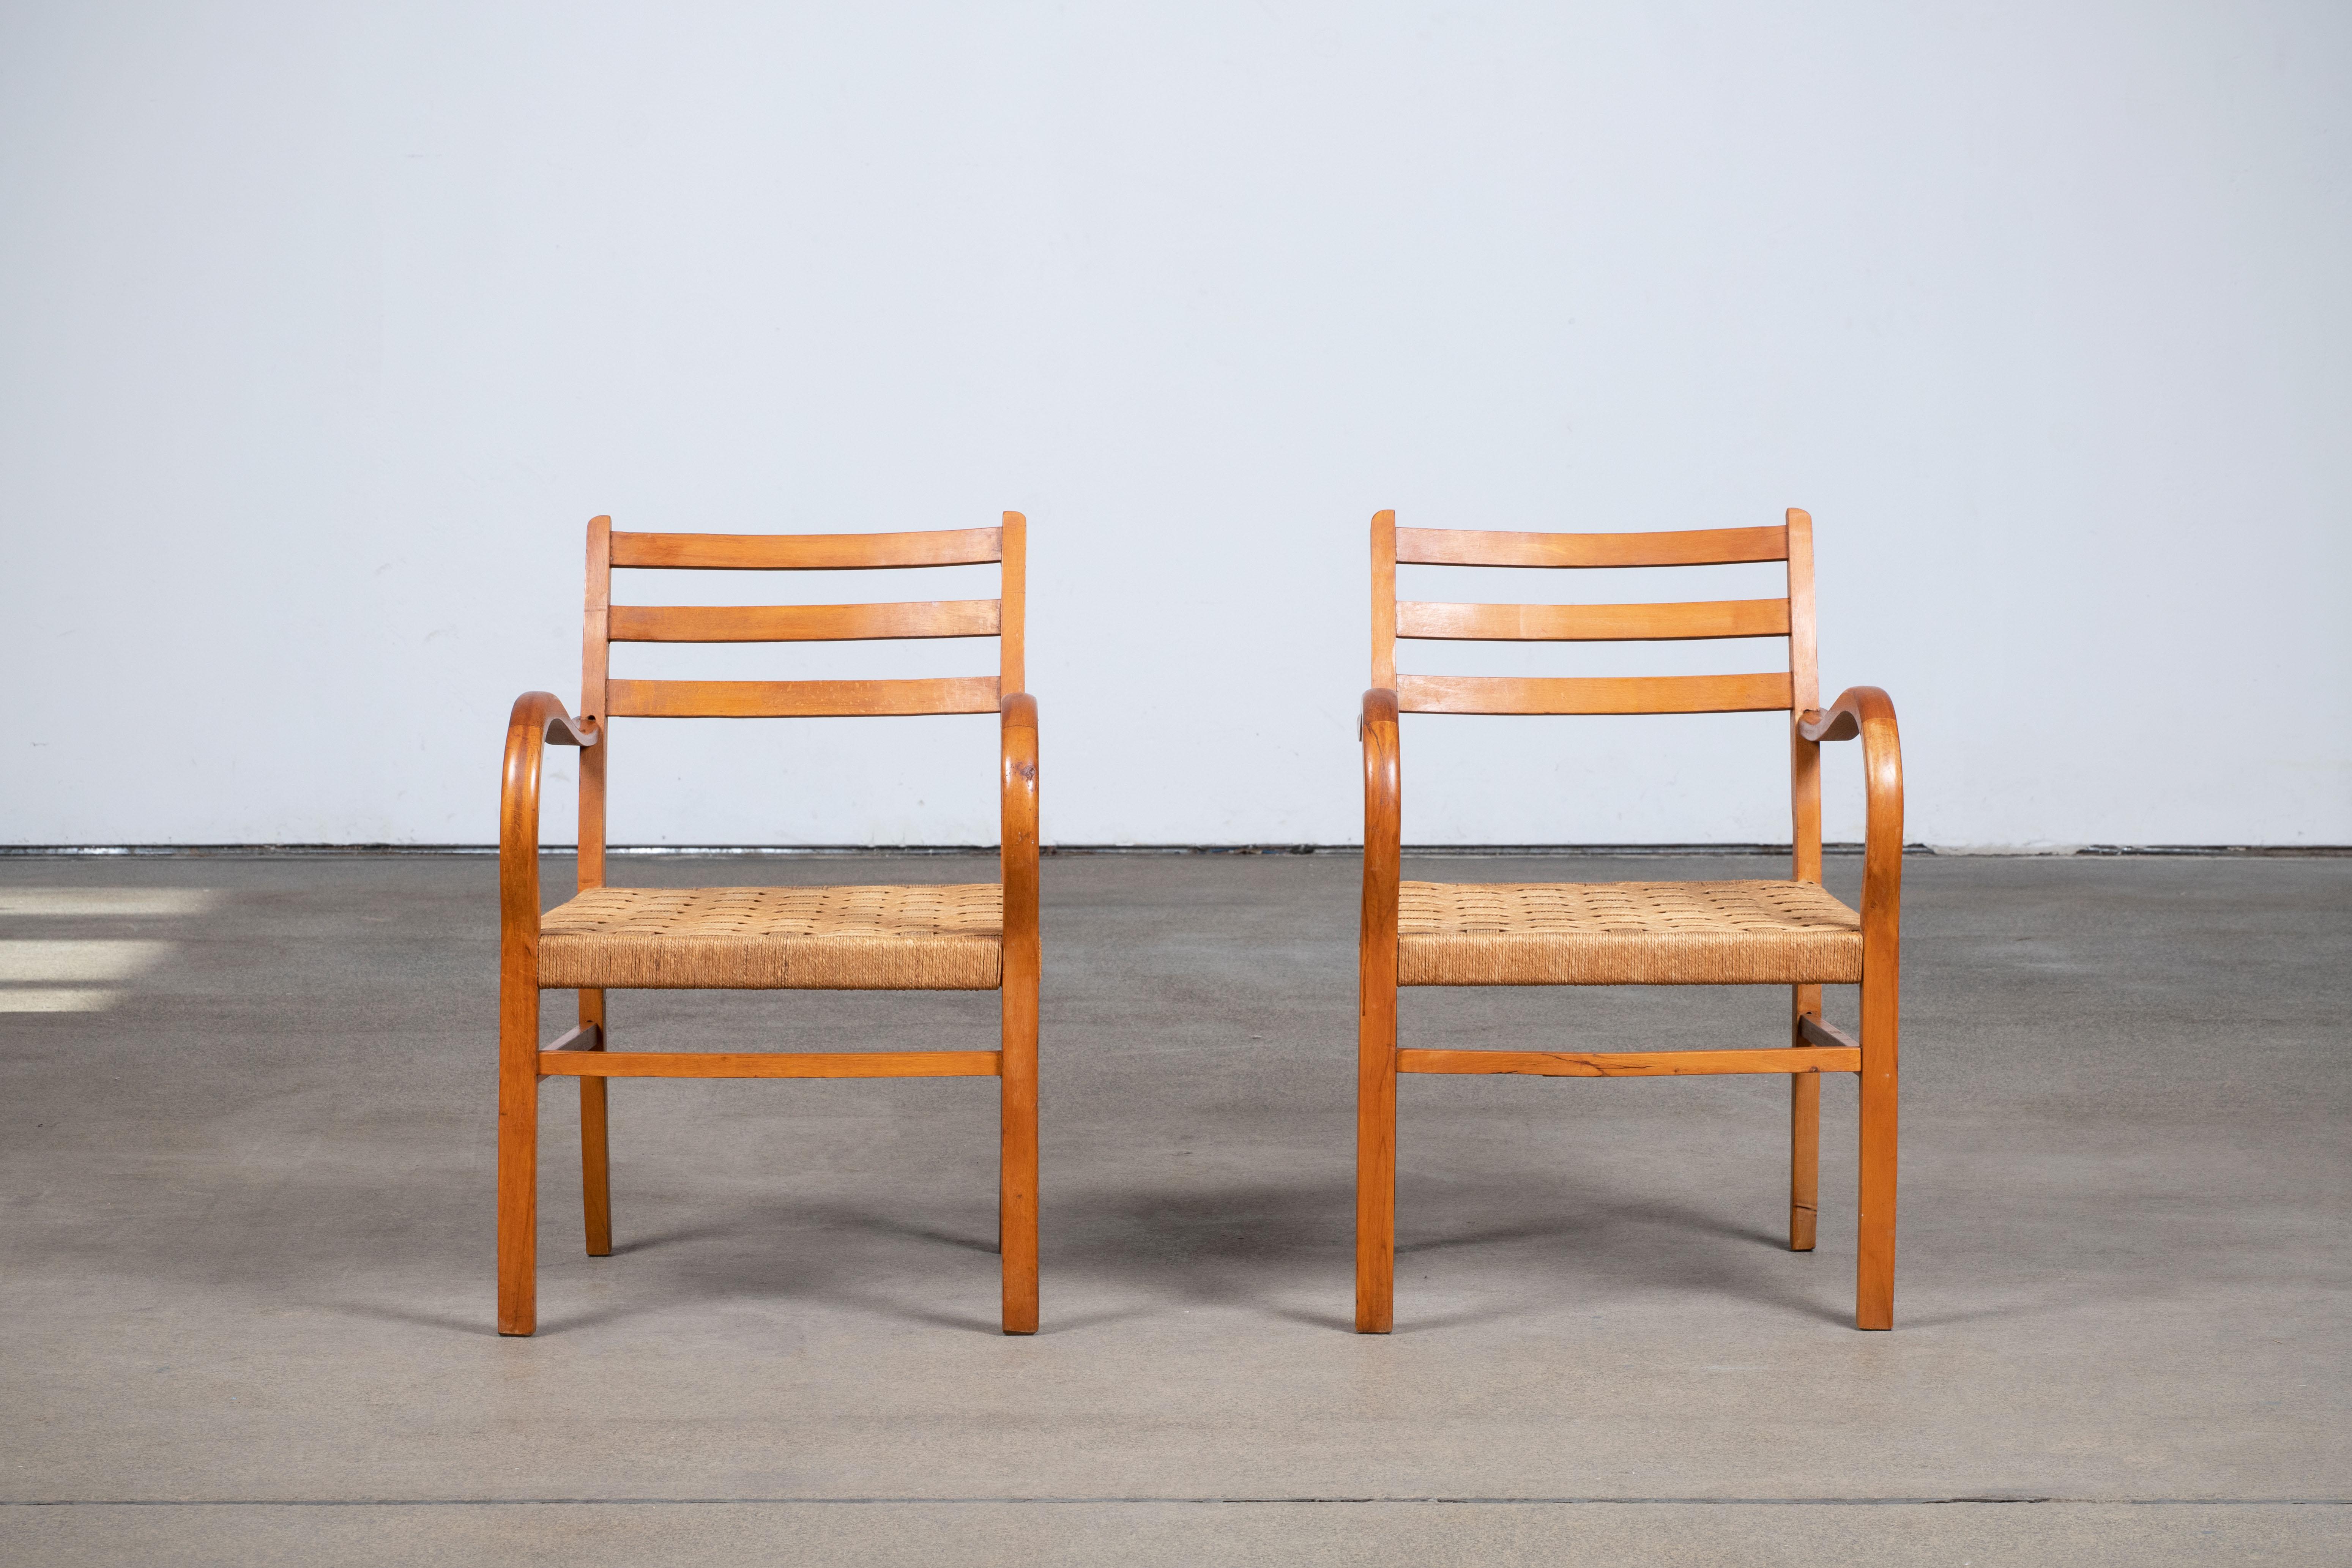 Paire de fauteuils Bauhaus d'Erich Dieckmann, 1925.
Avec Marcel Breuer, il est considéré comme le plus important designer de meubles du Bauhaus. Il a surtout développé des meubles, d'abord en bois de forme géométrique basique avec des cadres